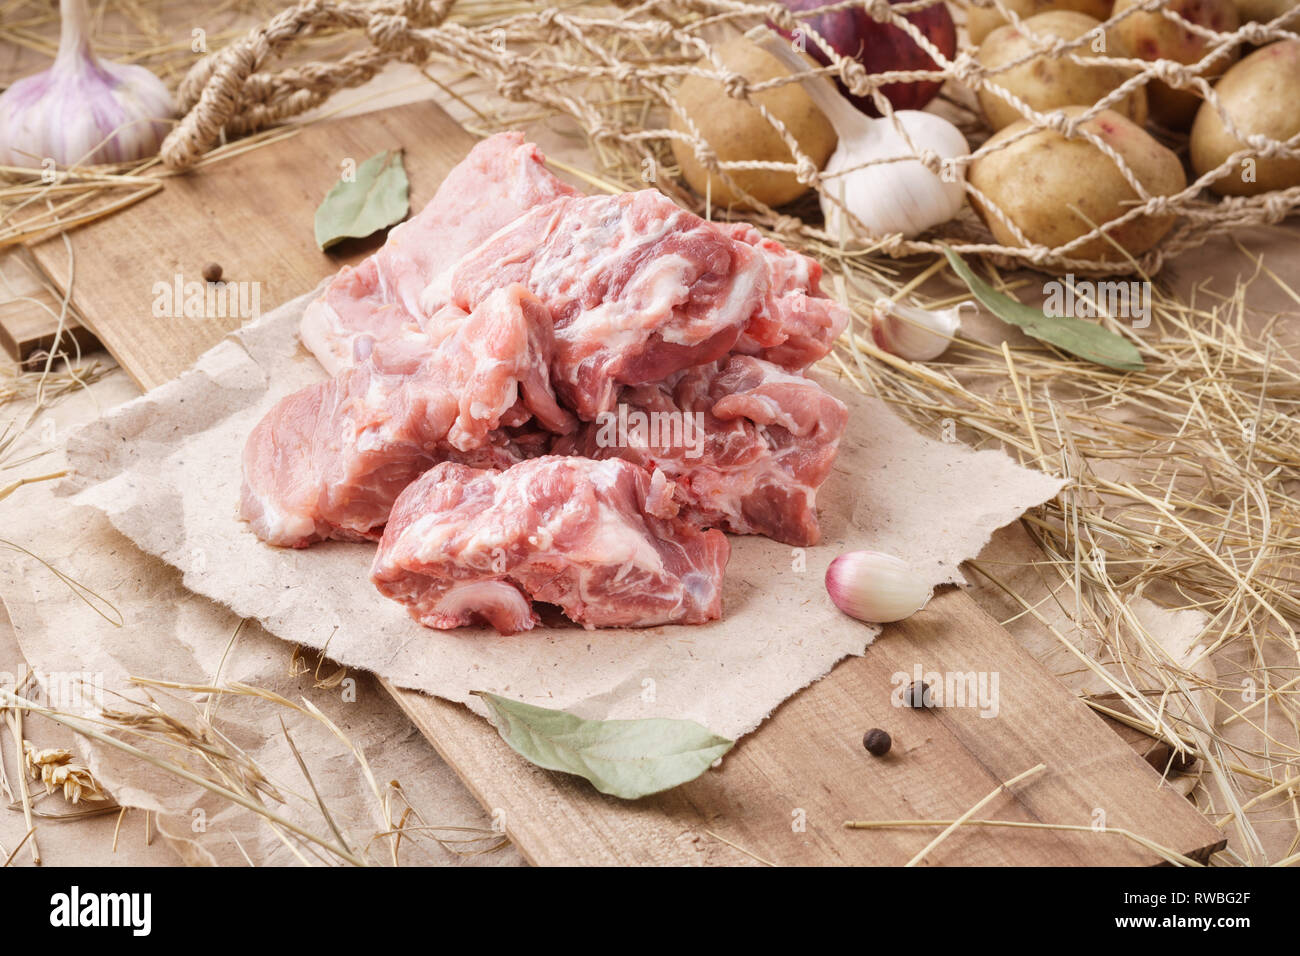 Rohes Schweinefleisch - wirbelsäule oder Bandscheiben. Frisches Fleisch und Zutaten. Im rustikalen Stil. Stockfoto